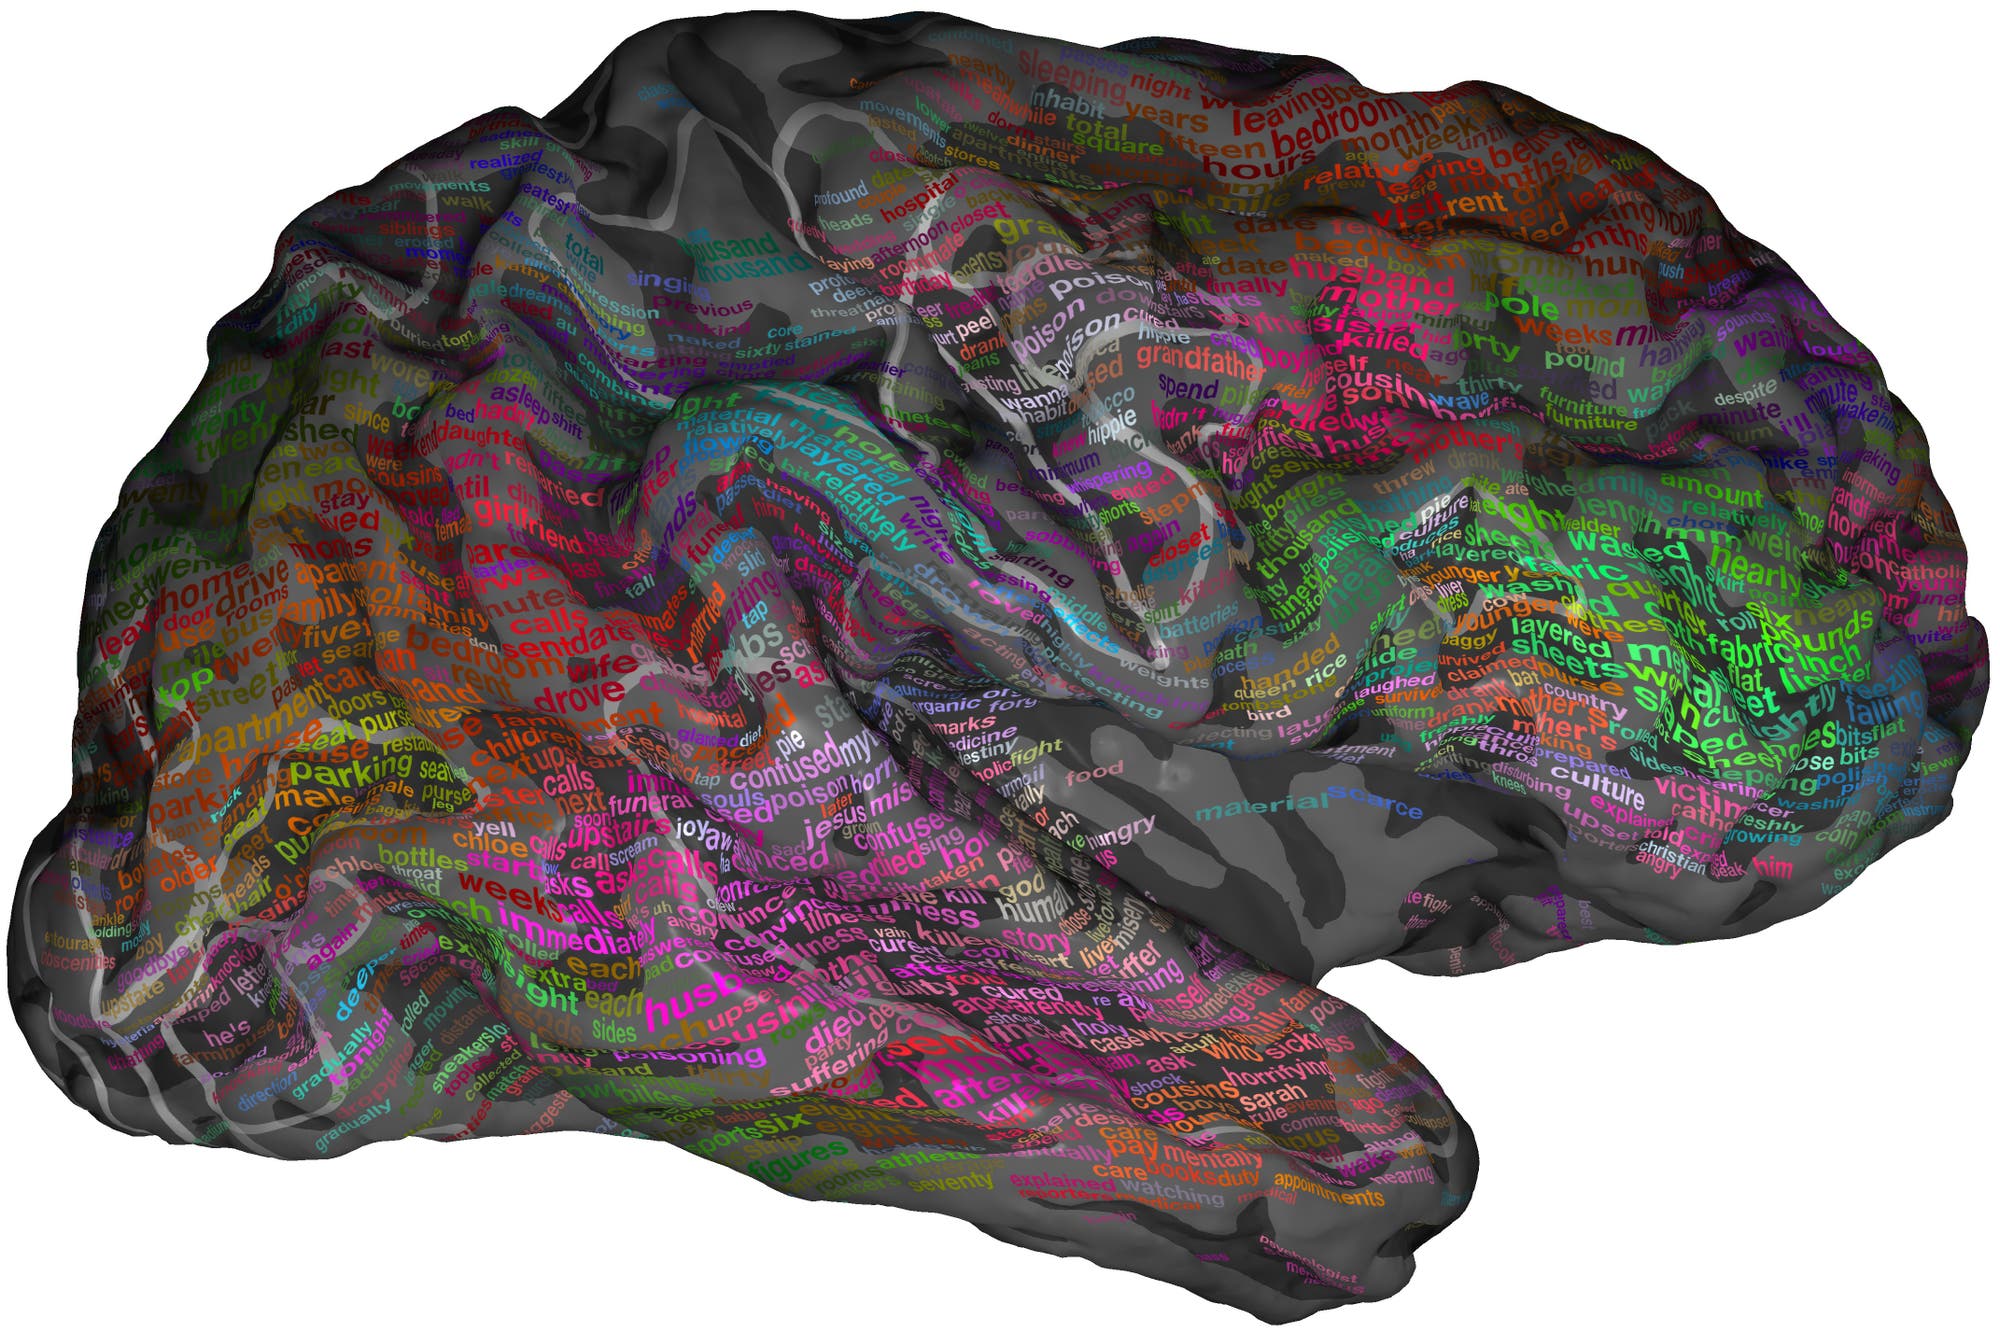 Eine semantische Karte des Gehirns 